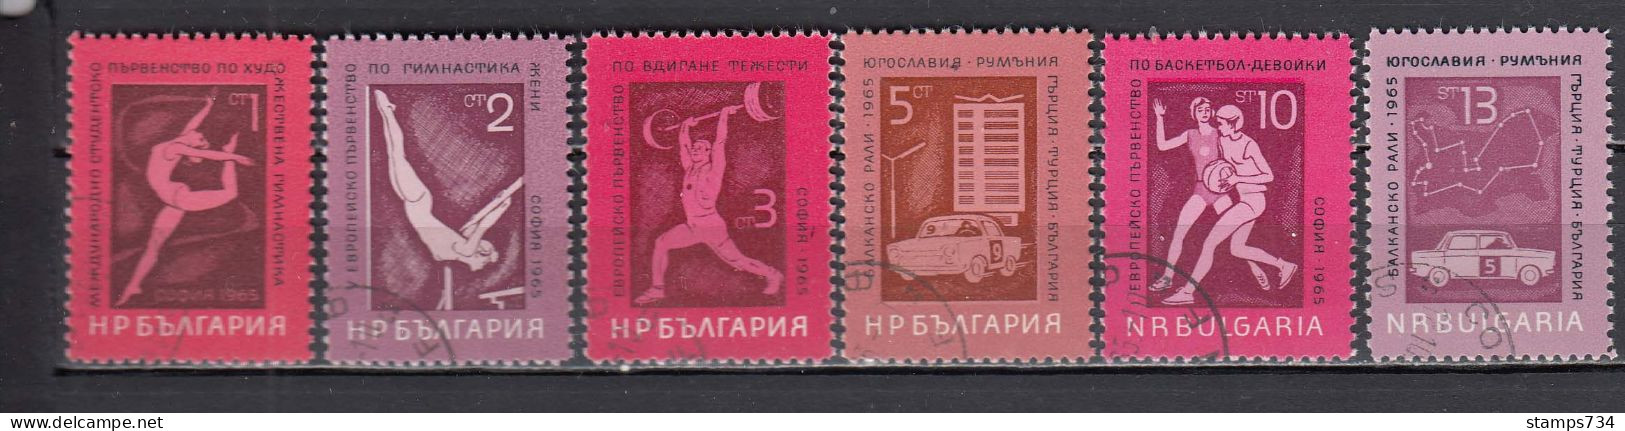 Bulgaria 1965 - Sport, Mi-Nr. 1558/63, Used - Gebruikt